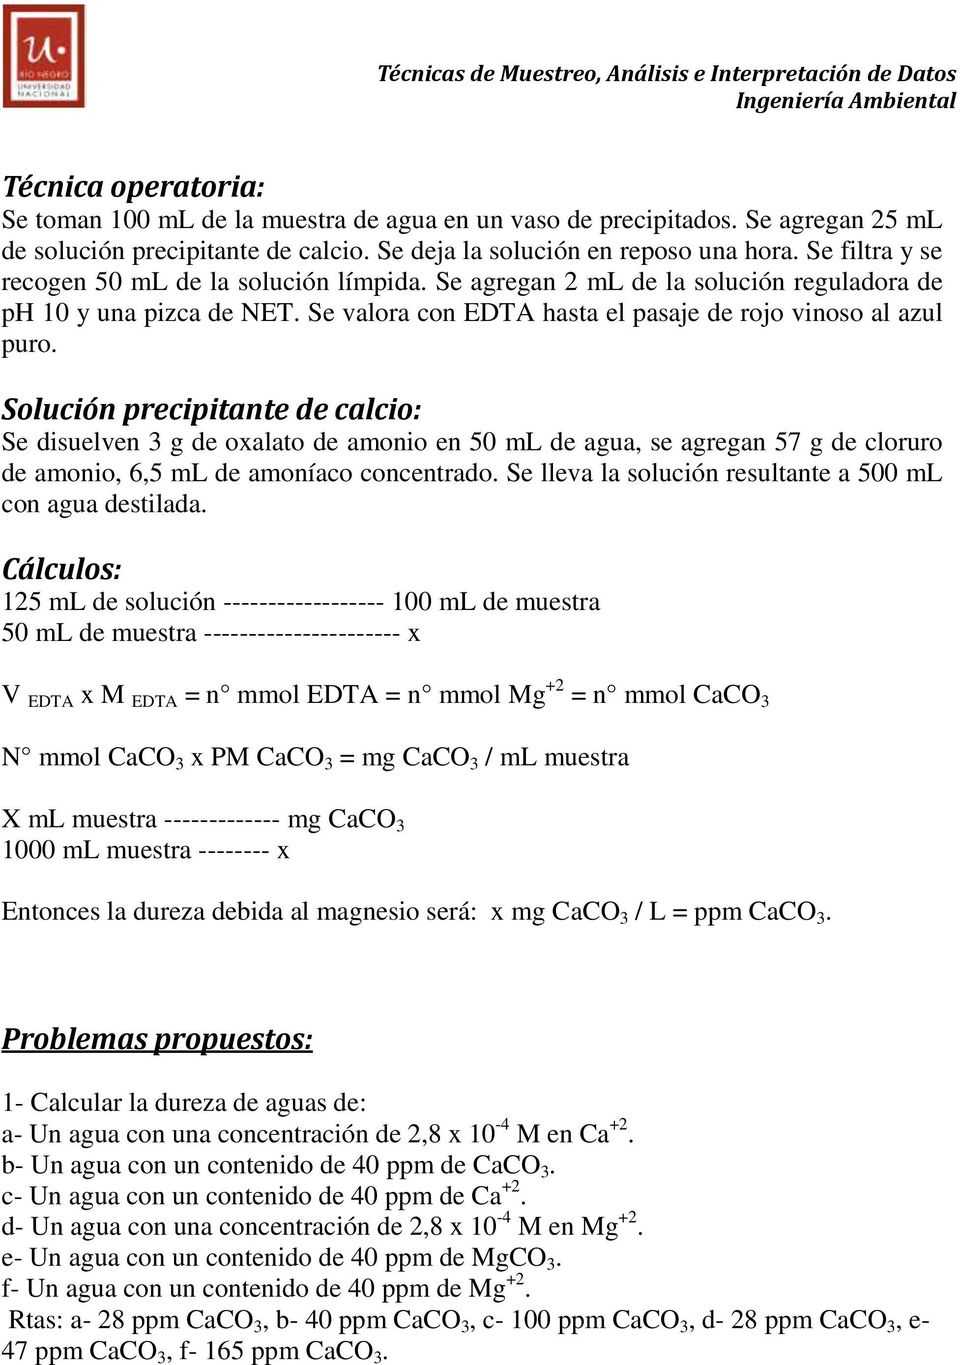 Solución precipitante de calcio: Se disuelven 3 g de oxalato de amonio en 50 ml de agua, se agregan 57 g de cloruro de amonio, 6,5 ml de amoníaco concentrado.